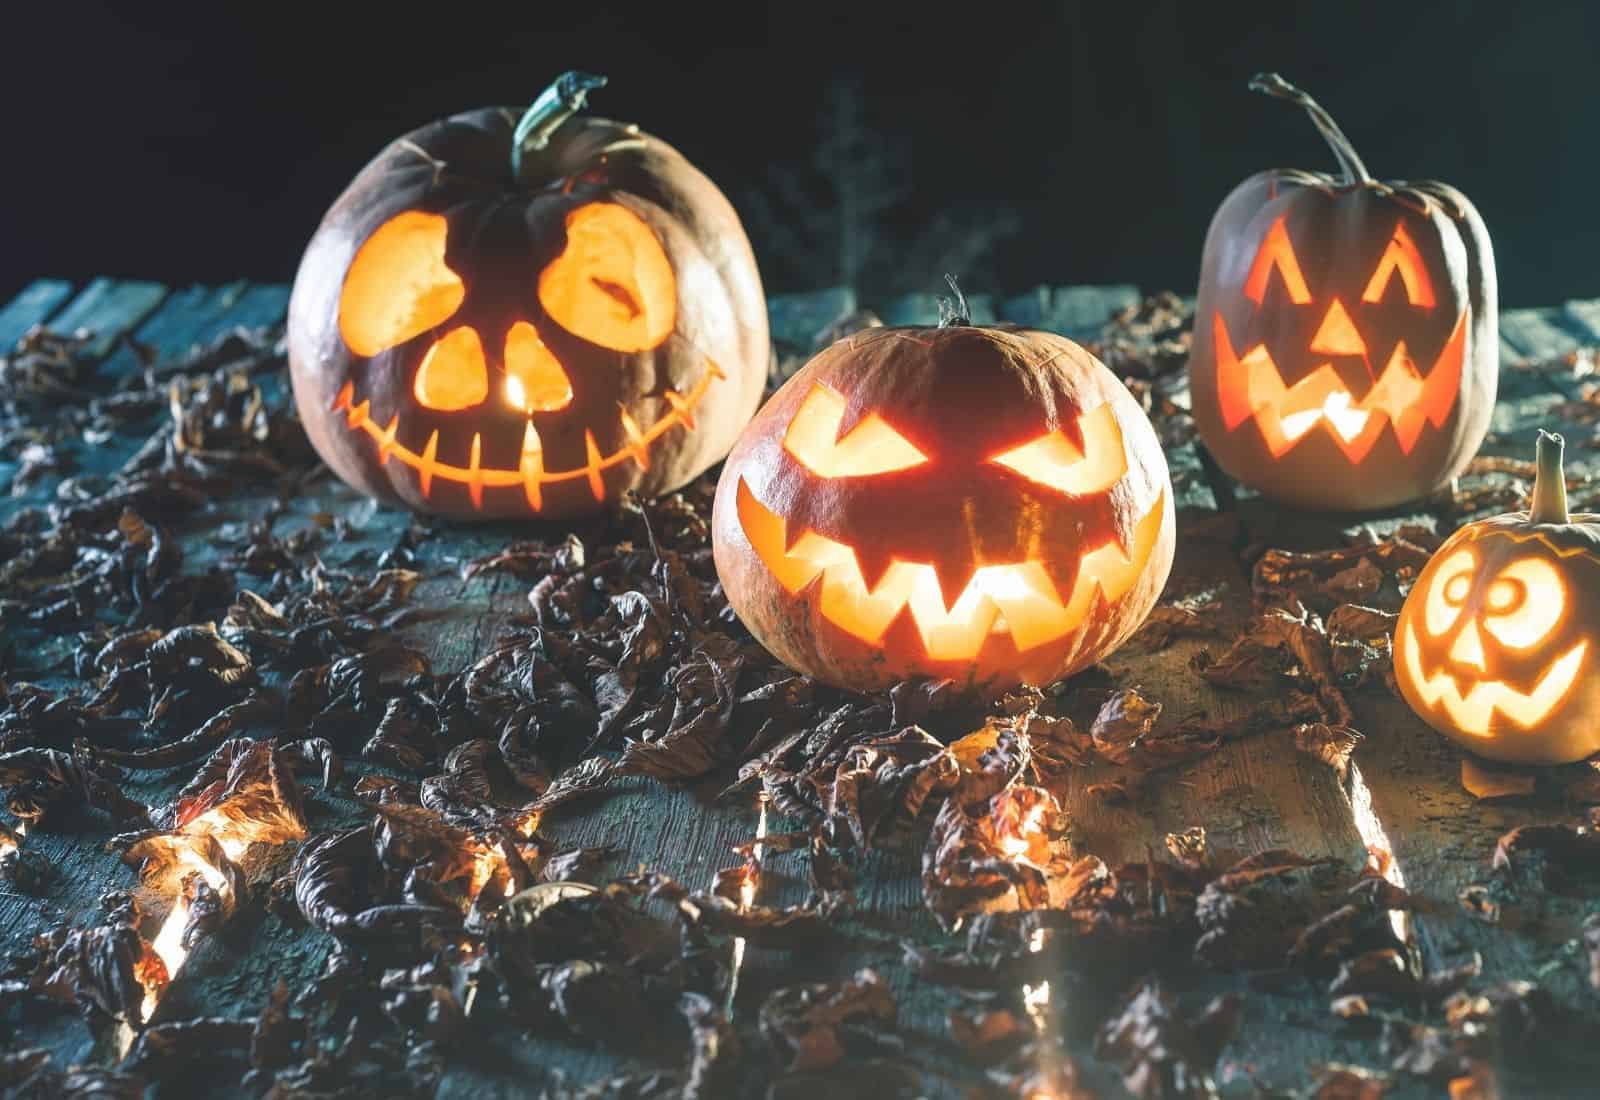 Four scary jack o'lanterns on halloween